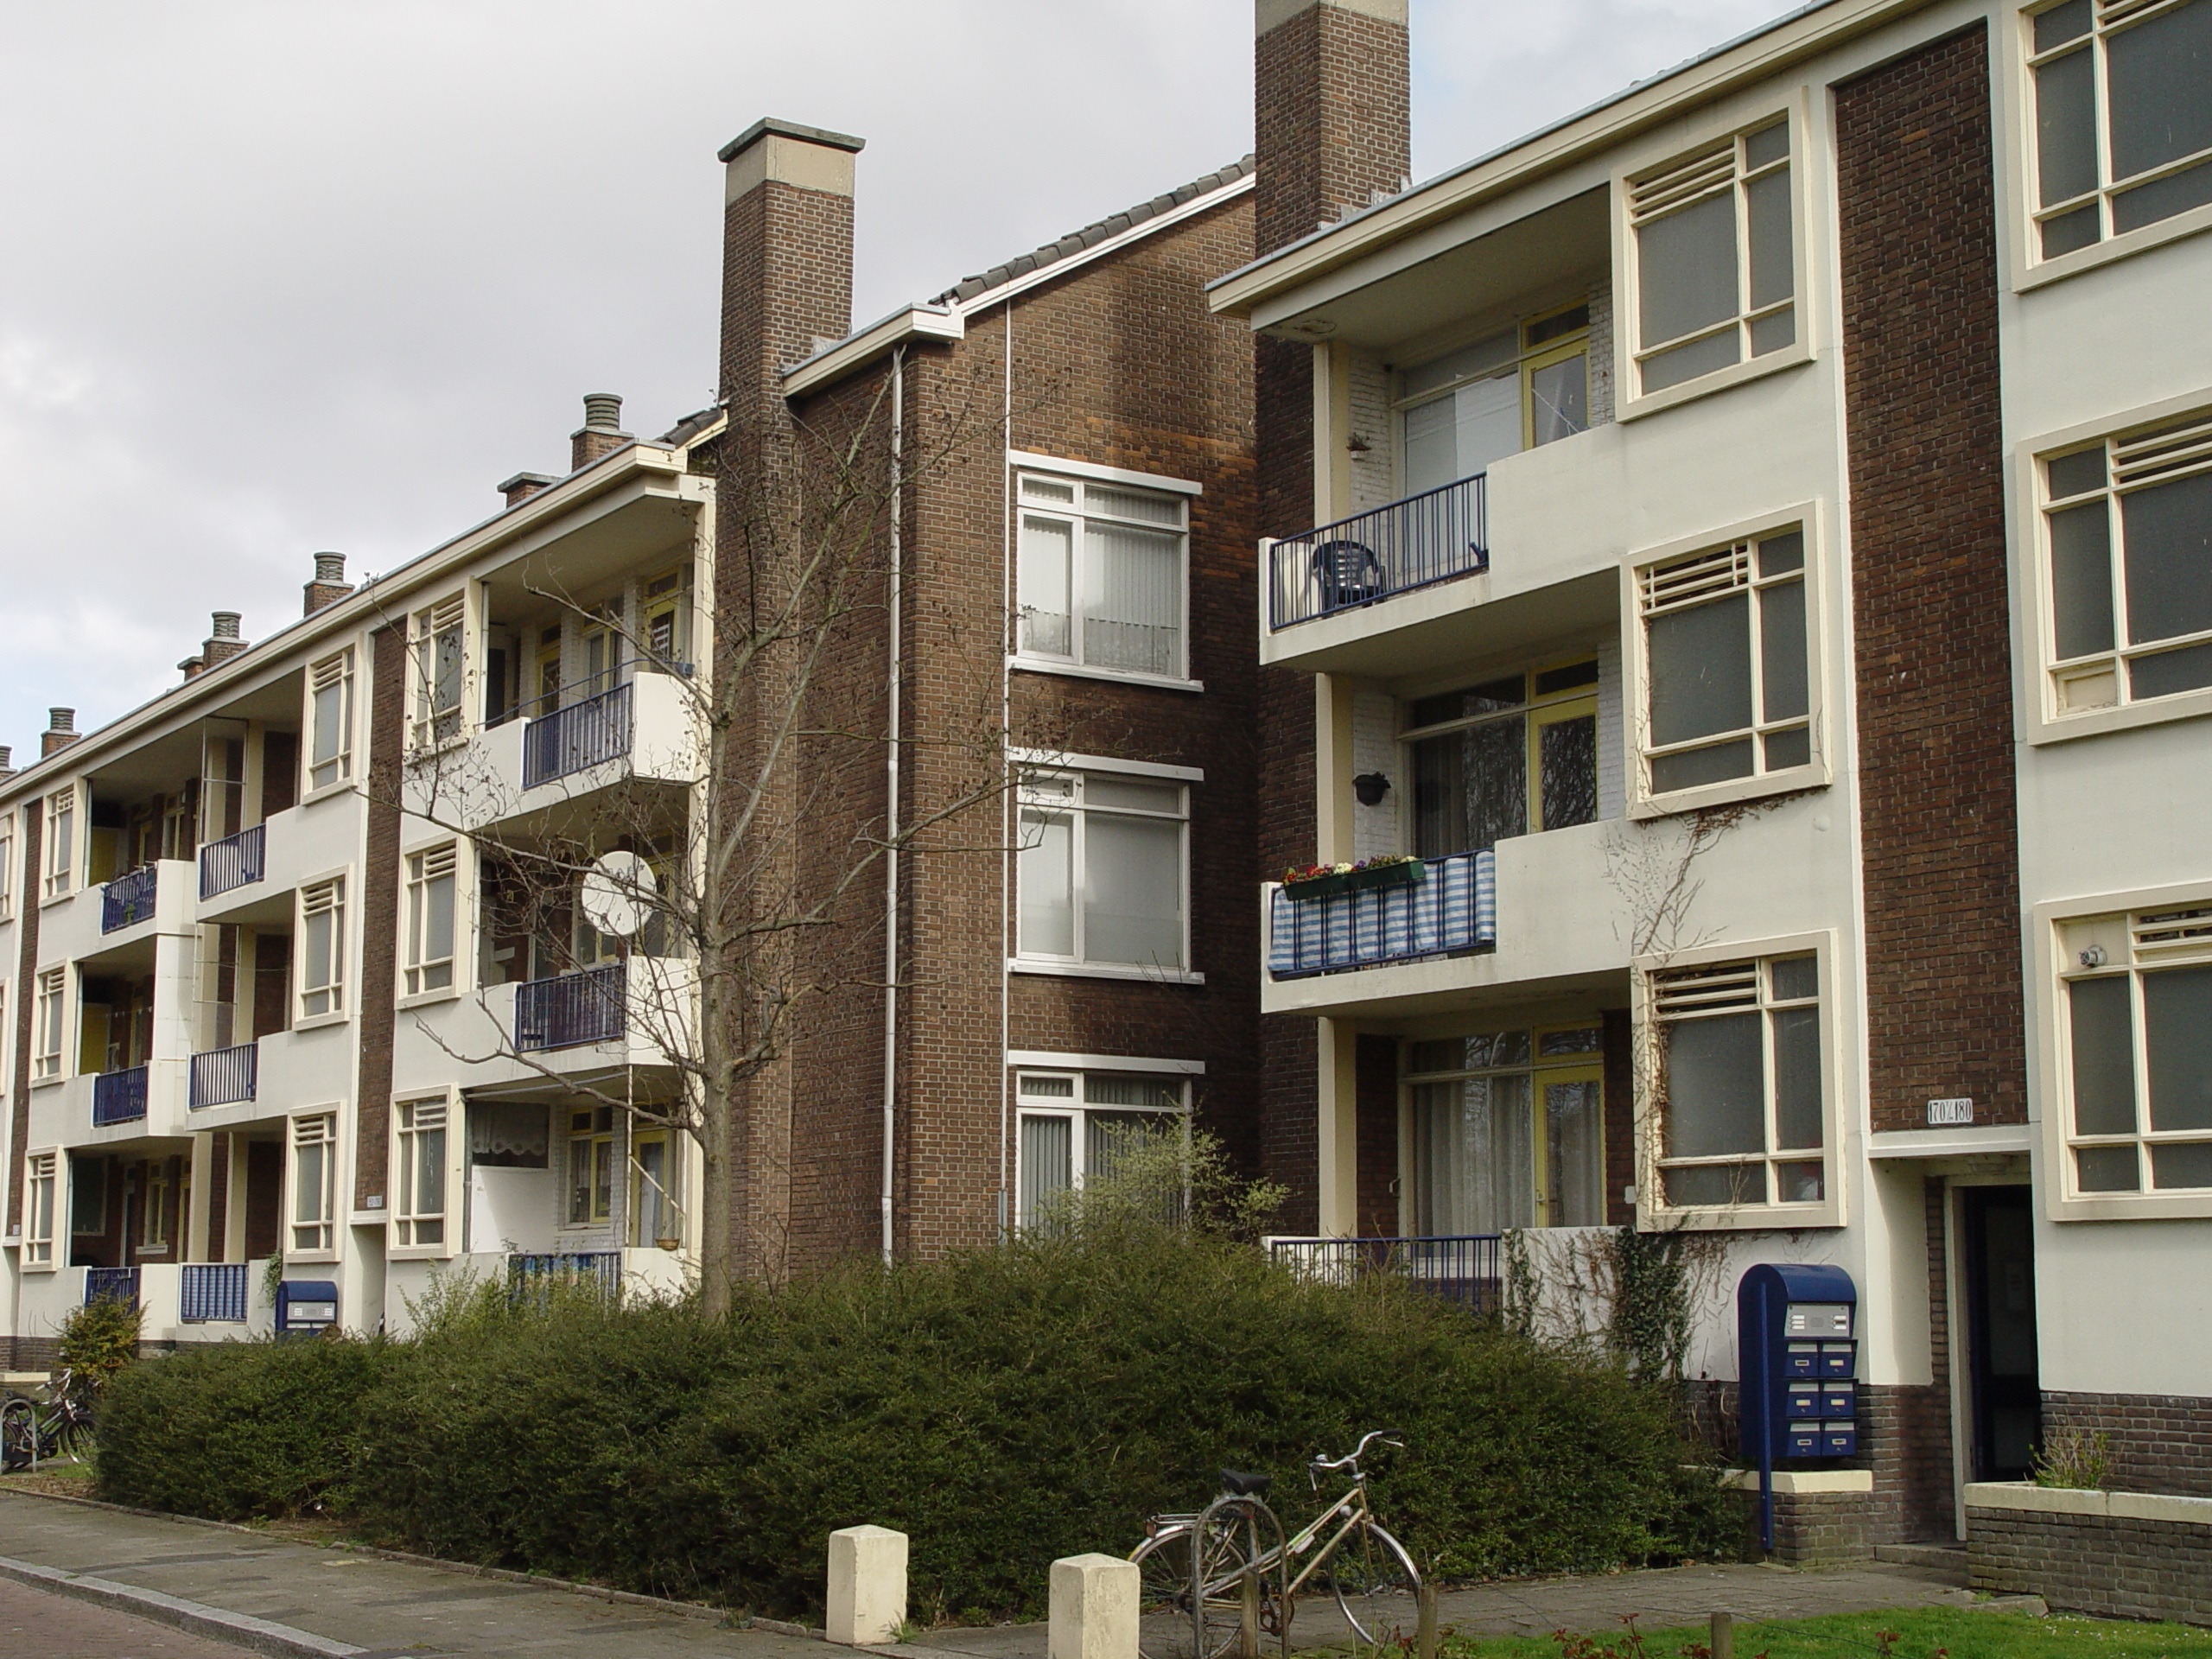 Van Zegwaardstraat 84, 2274 VJ Voorburg, Nederland